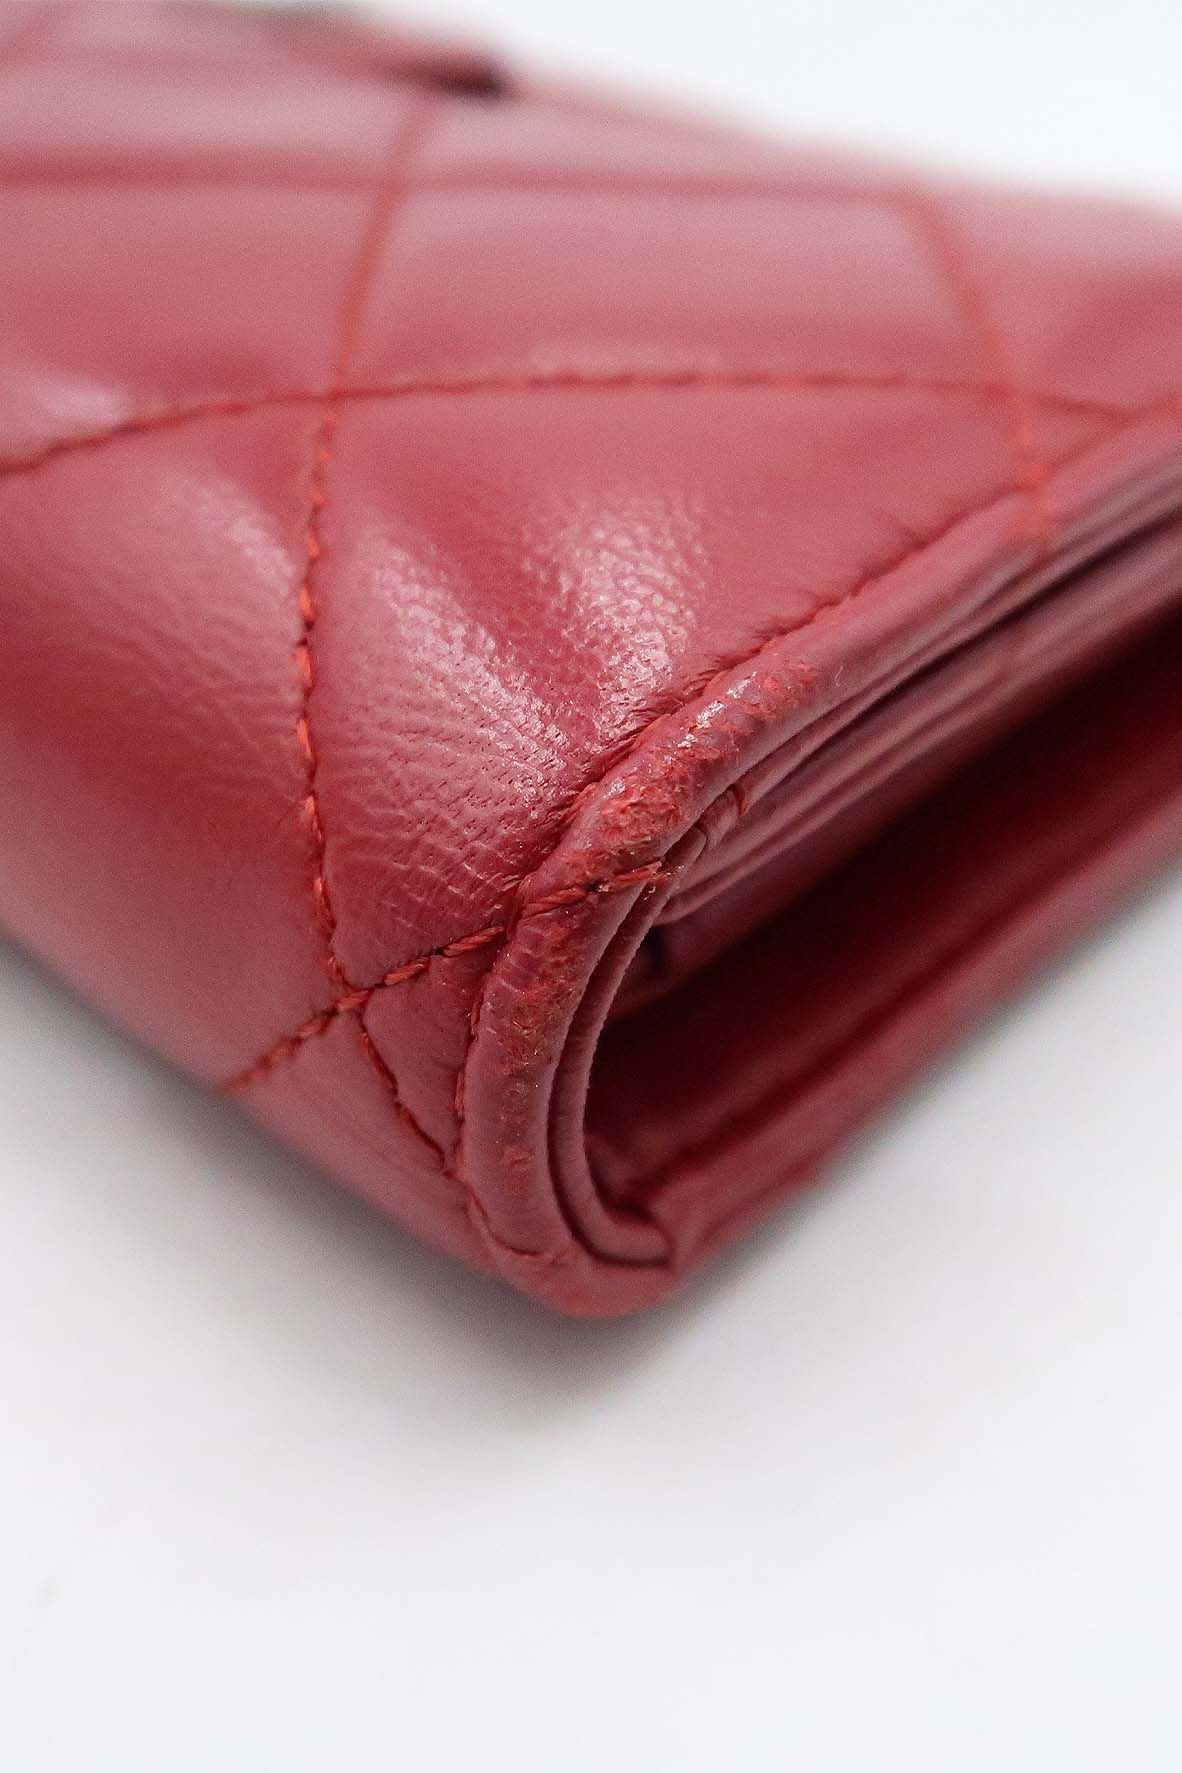 Chanel Classic Interlocking CC Long Wallet in Lambskin Red, Luxury